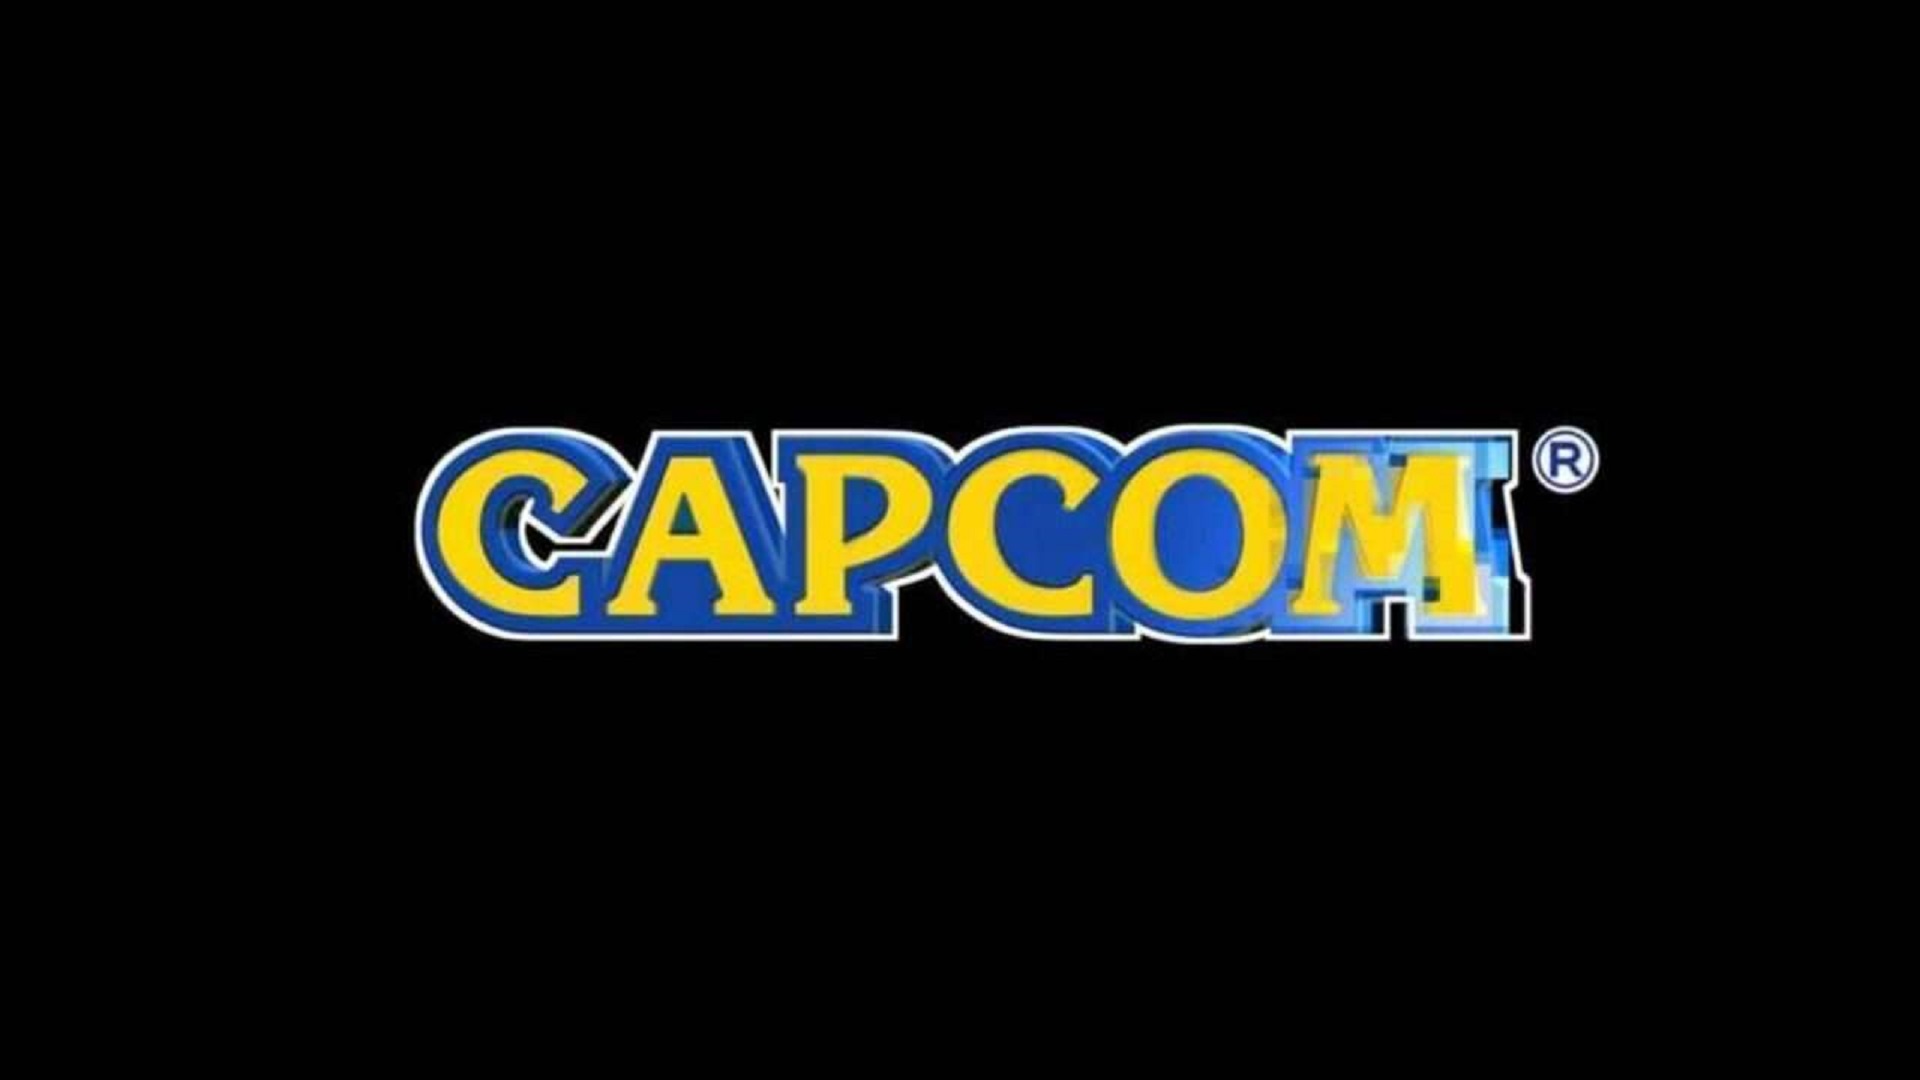 Grande vazamento da CAPCOM revela data de lançamento de Resident Evil Village e muito mais